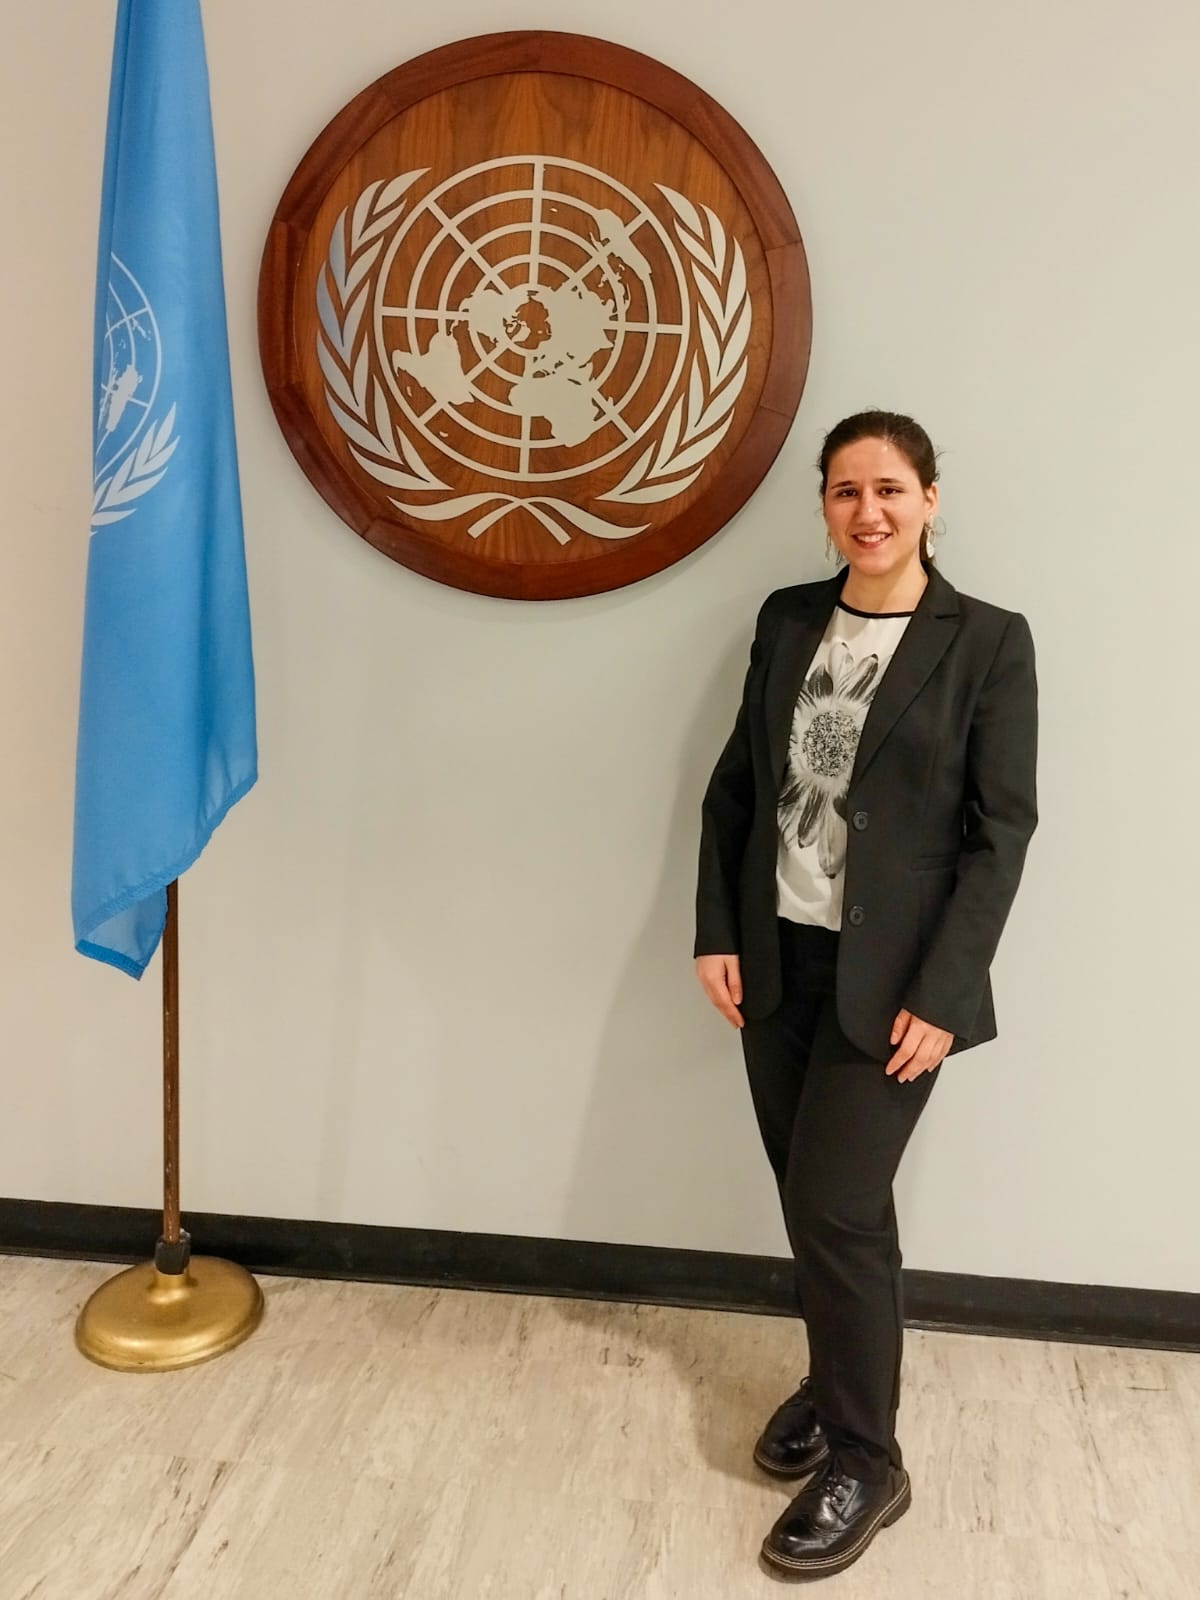 Amar at the UN